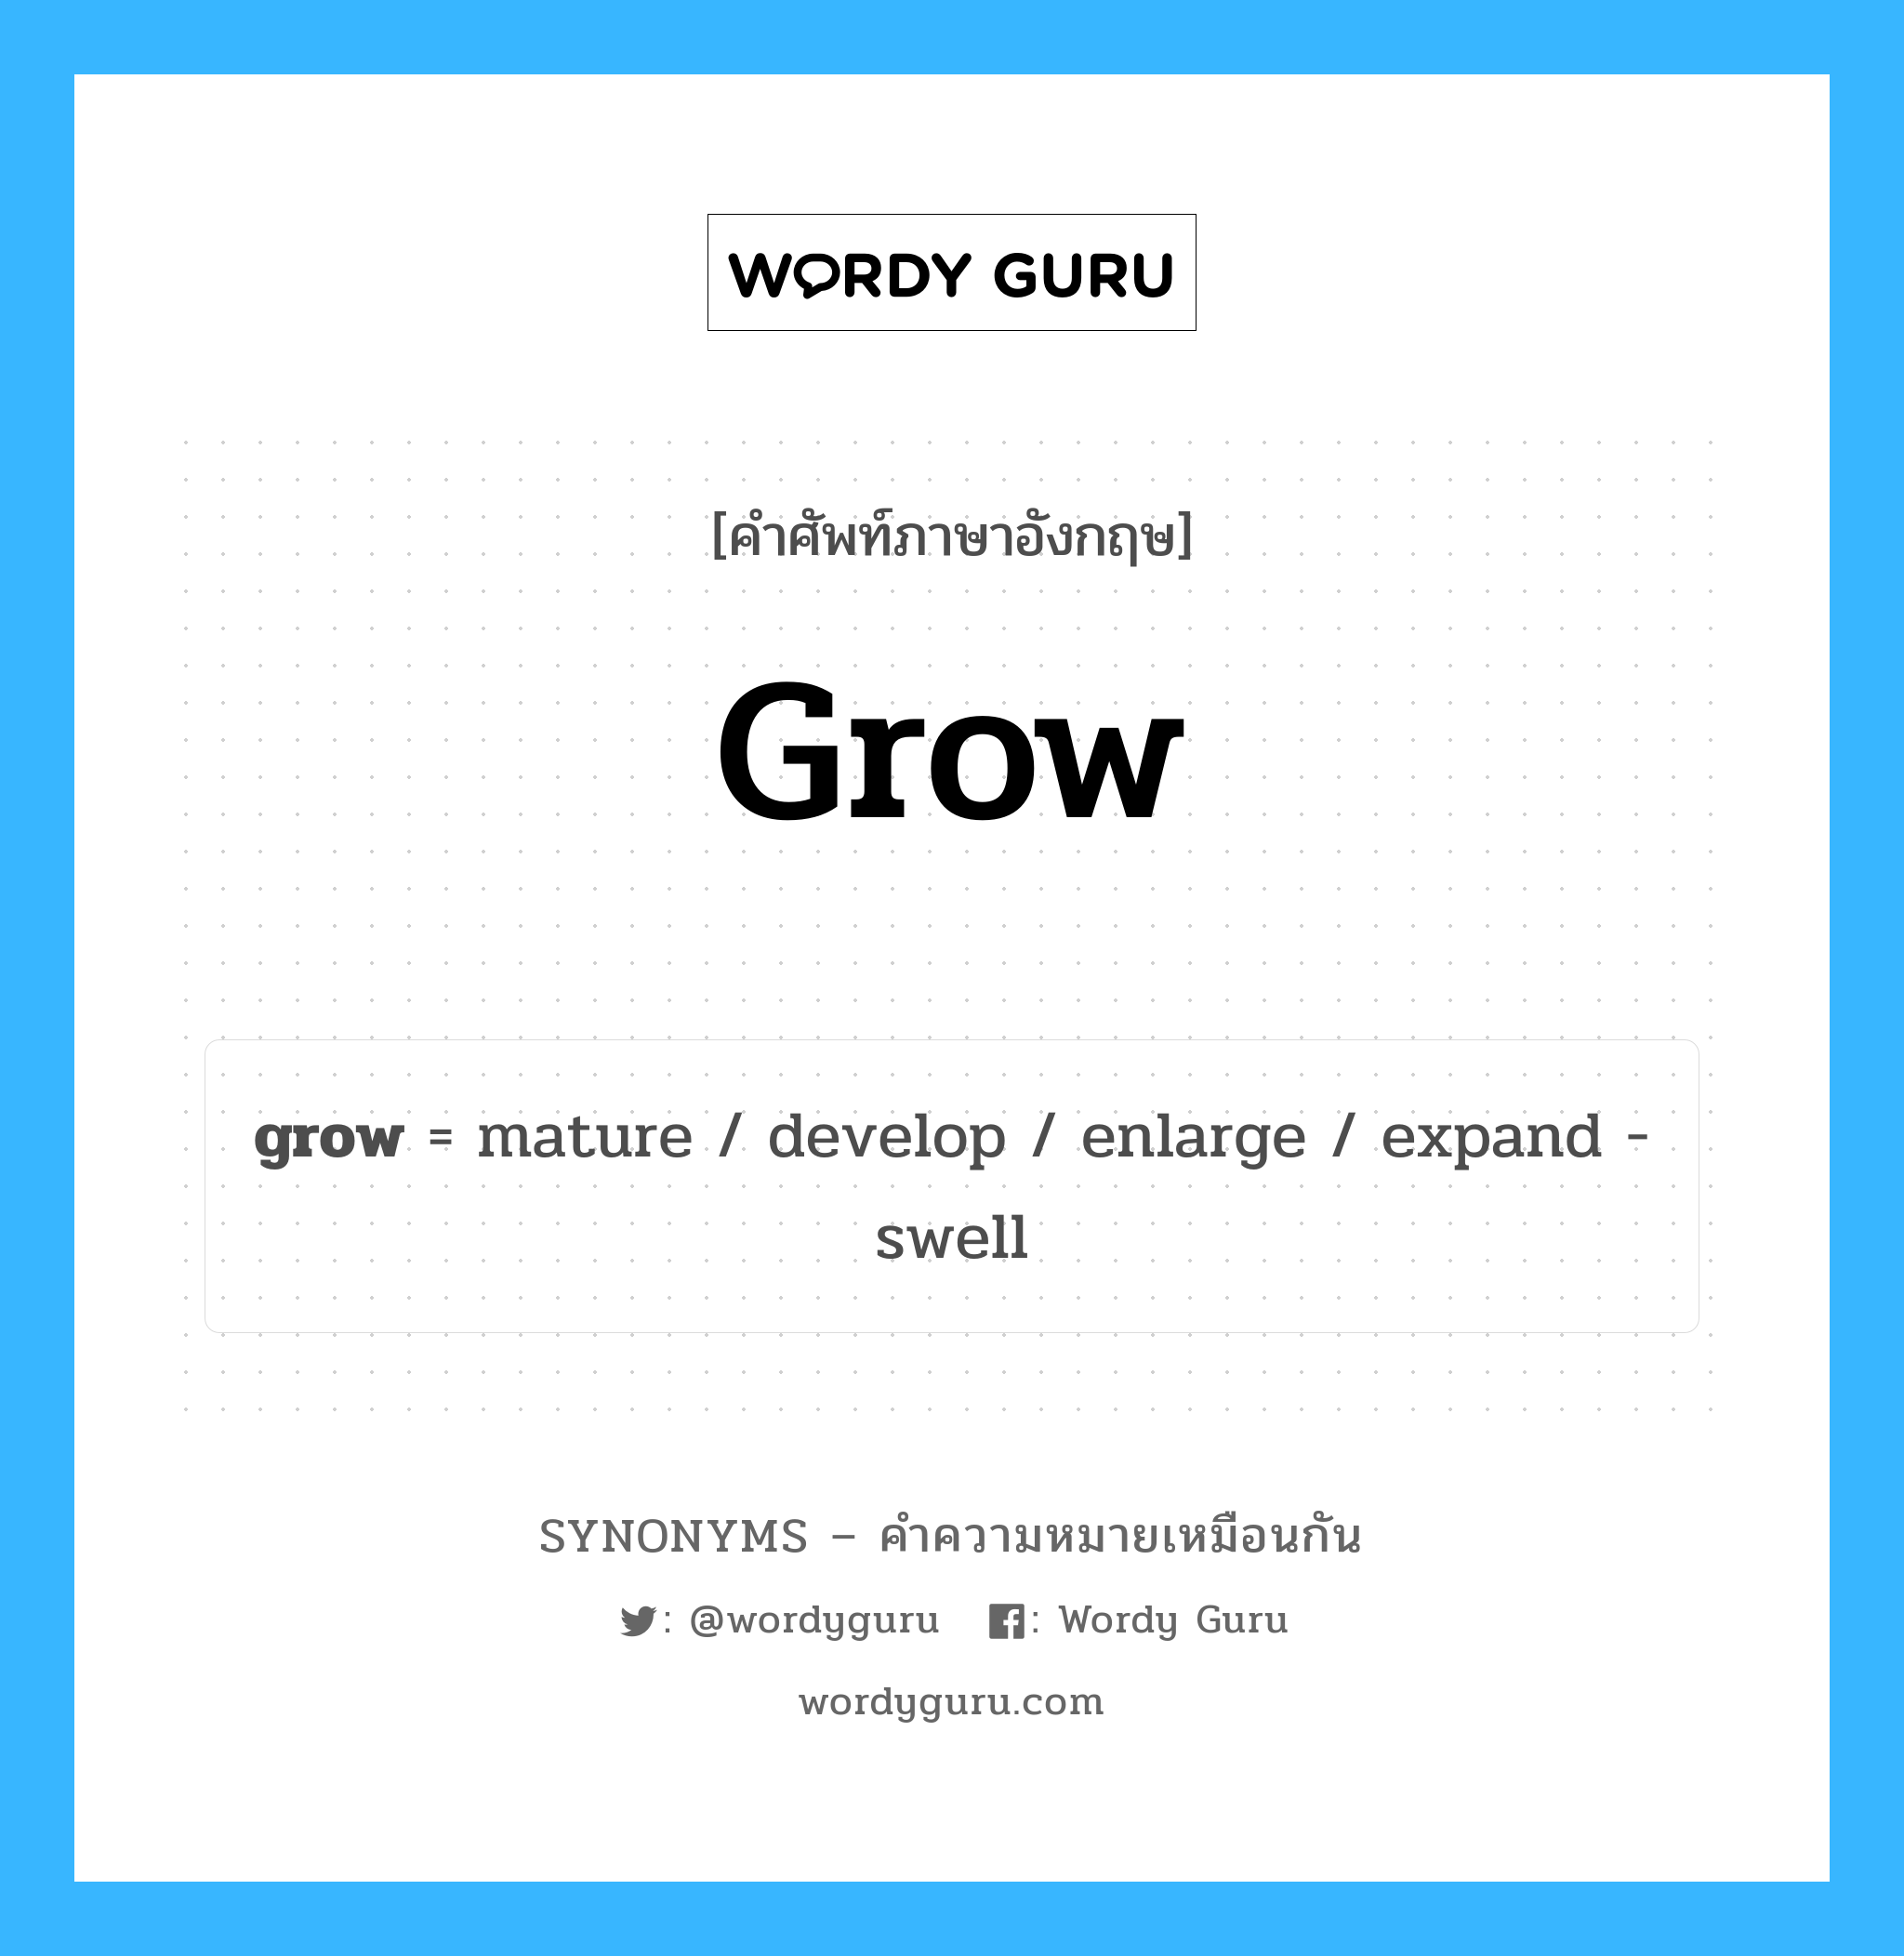 enlarge เป็นหนึ่งใน grow และมีคำอื่น ๆ อีกดังนี้, คำศัพท์ภาษาอังกฤษ enlarge ความหมายคล้ายกันกับ grow แปลว่า ขยาย หมวด grow